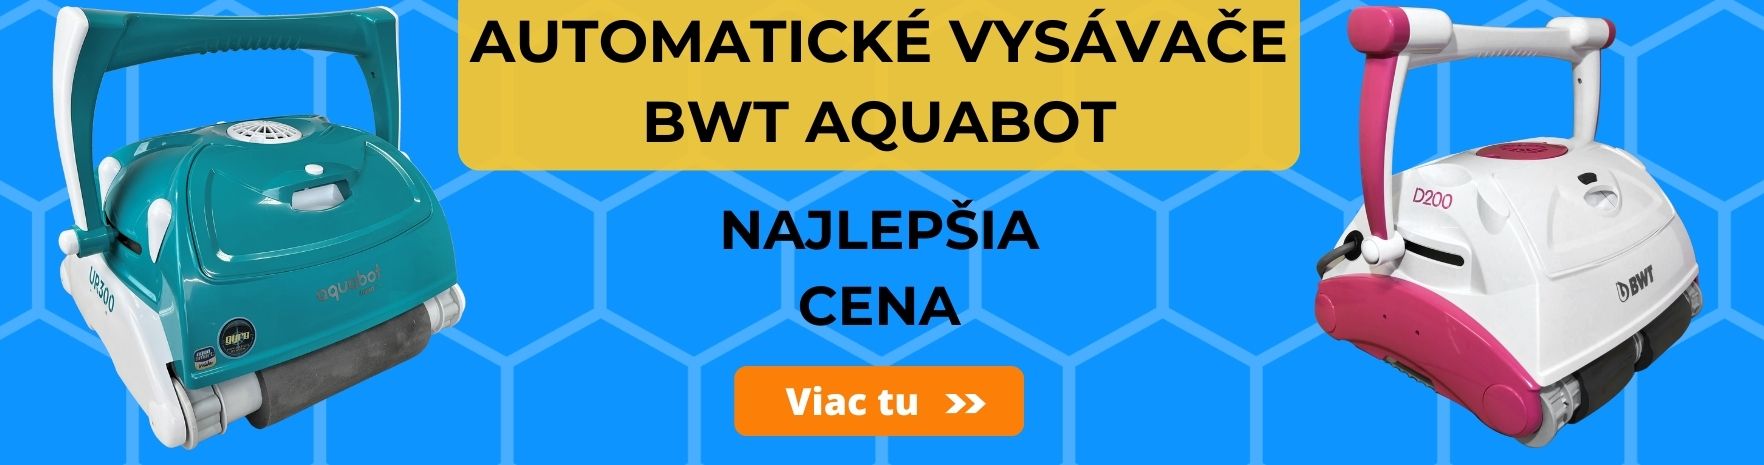 Automatické bazénový vysávače bwt aquabot